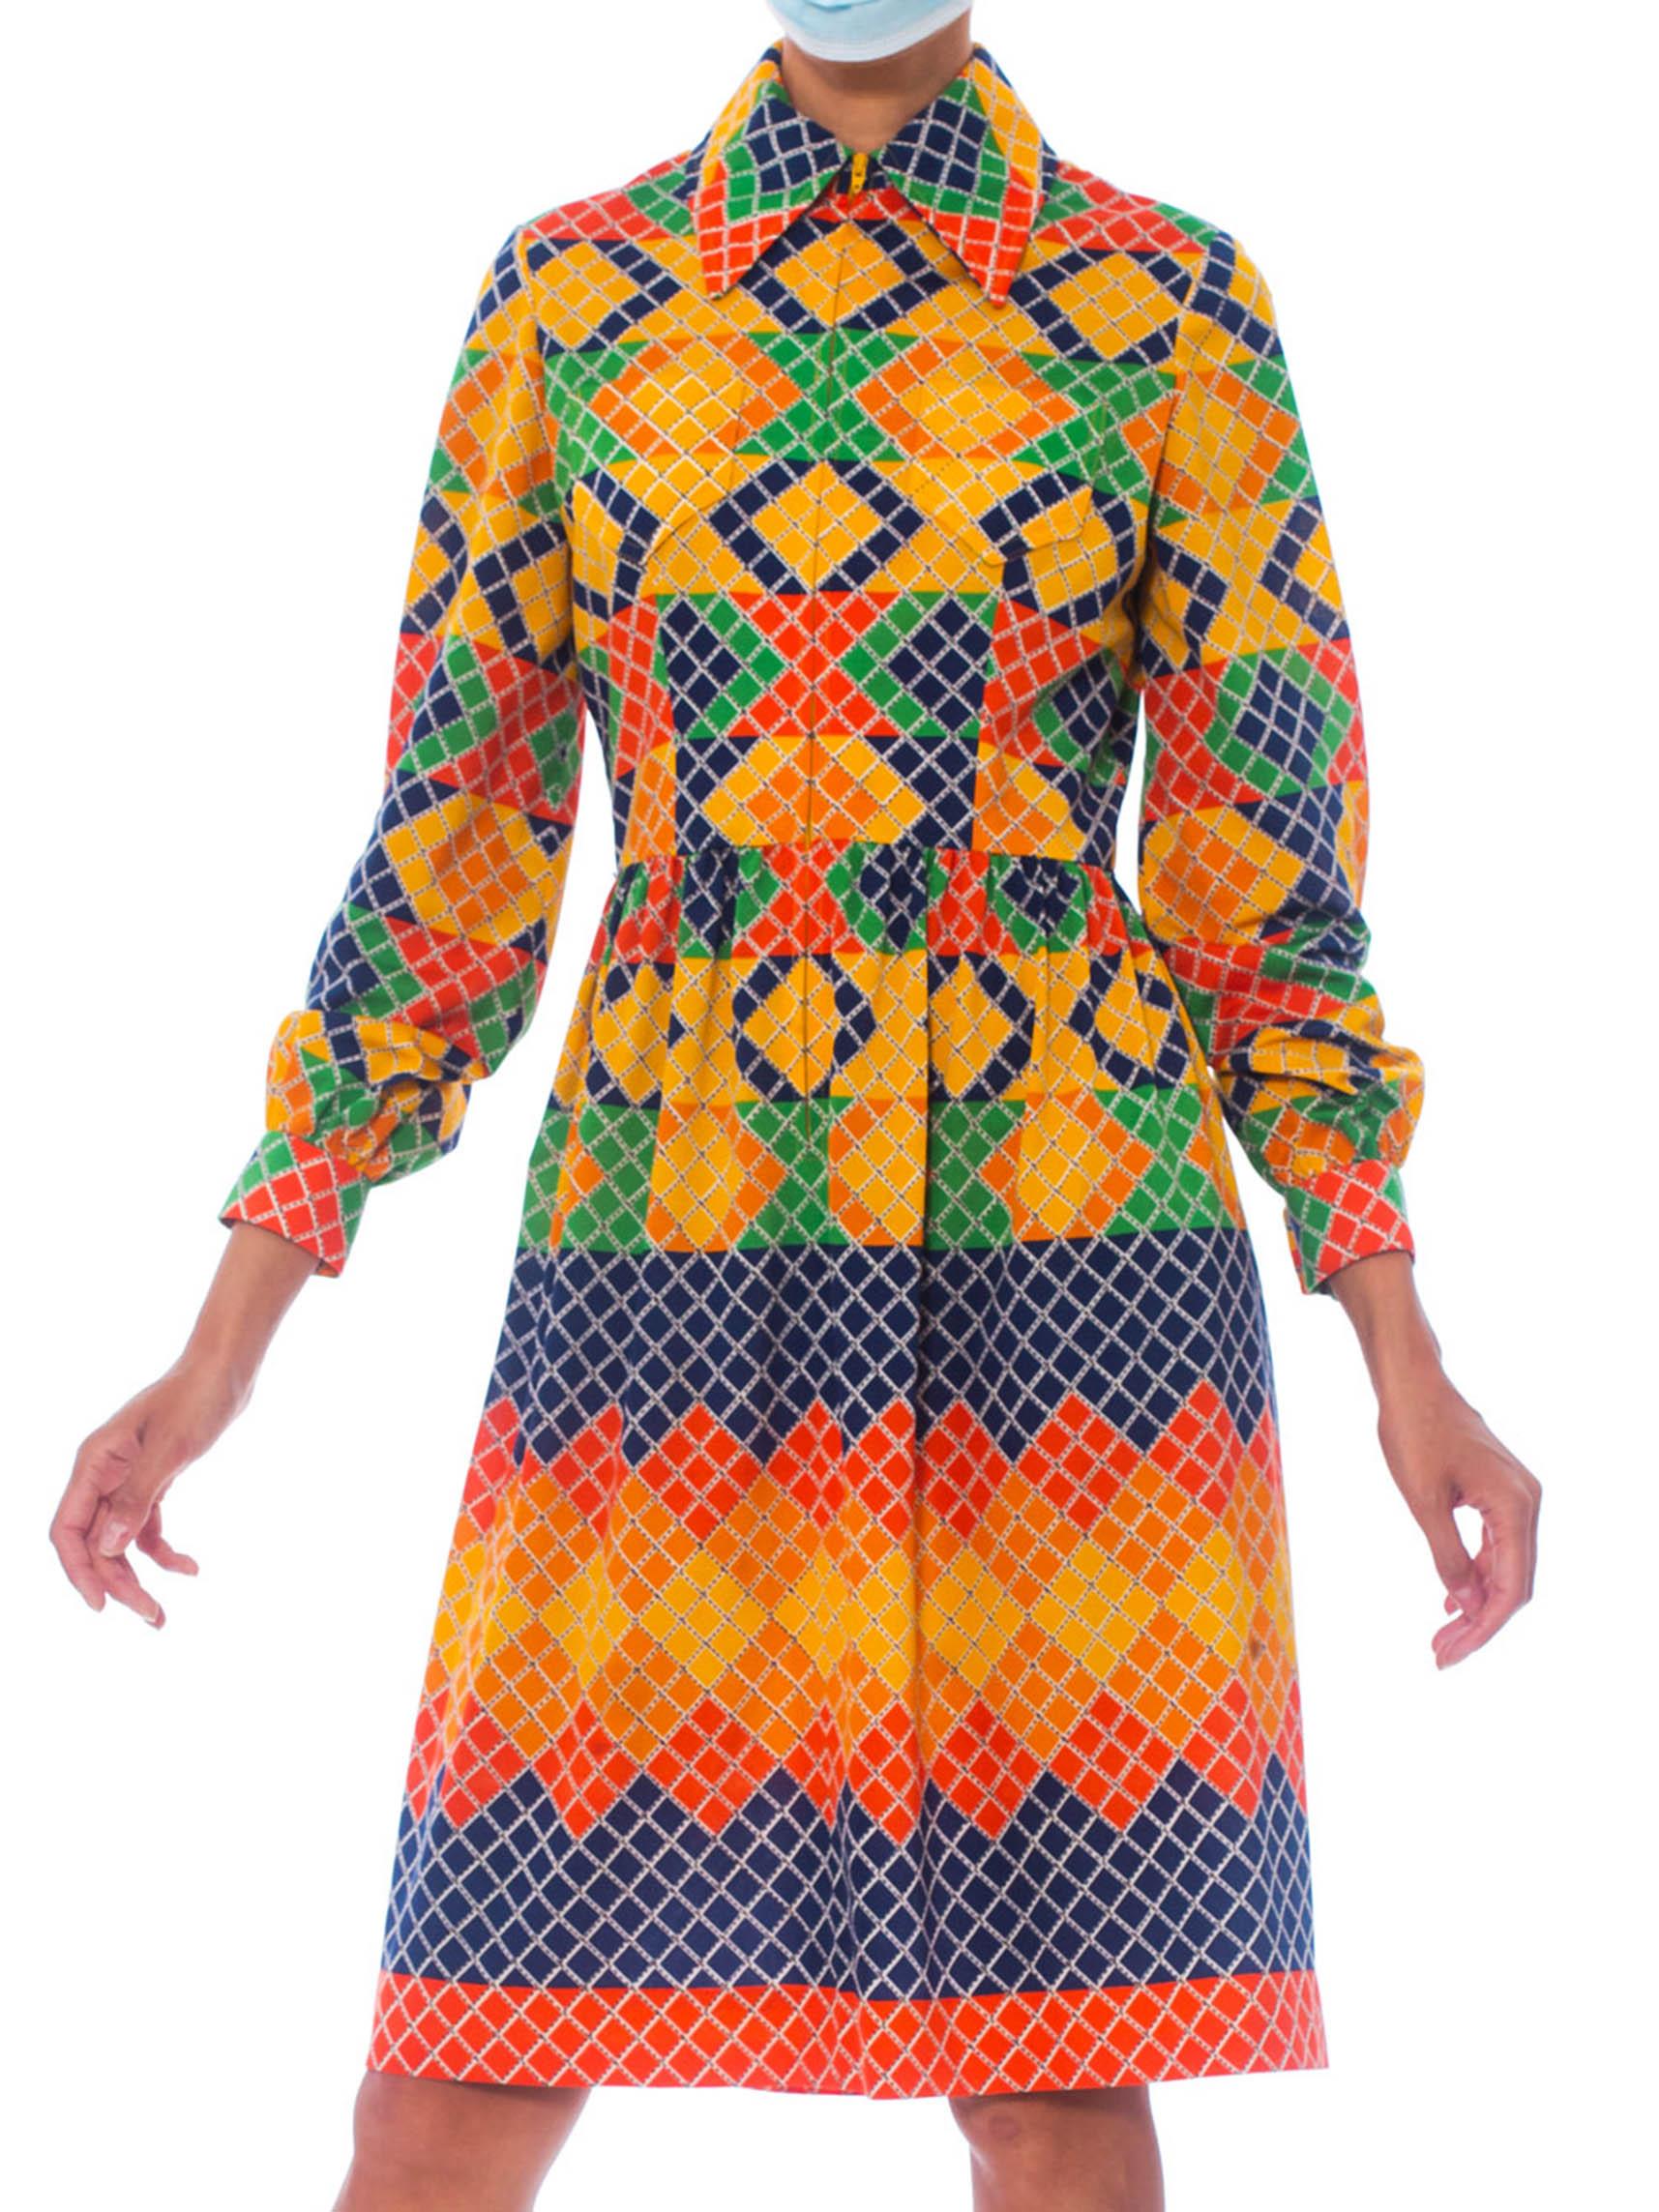 OSCAR DE LA RENTA Robe chemise en jersey de polyester multicolore à motifs géométriques, années 1960 3